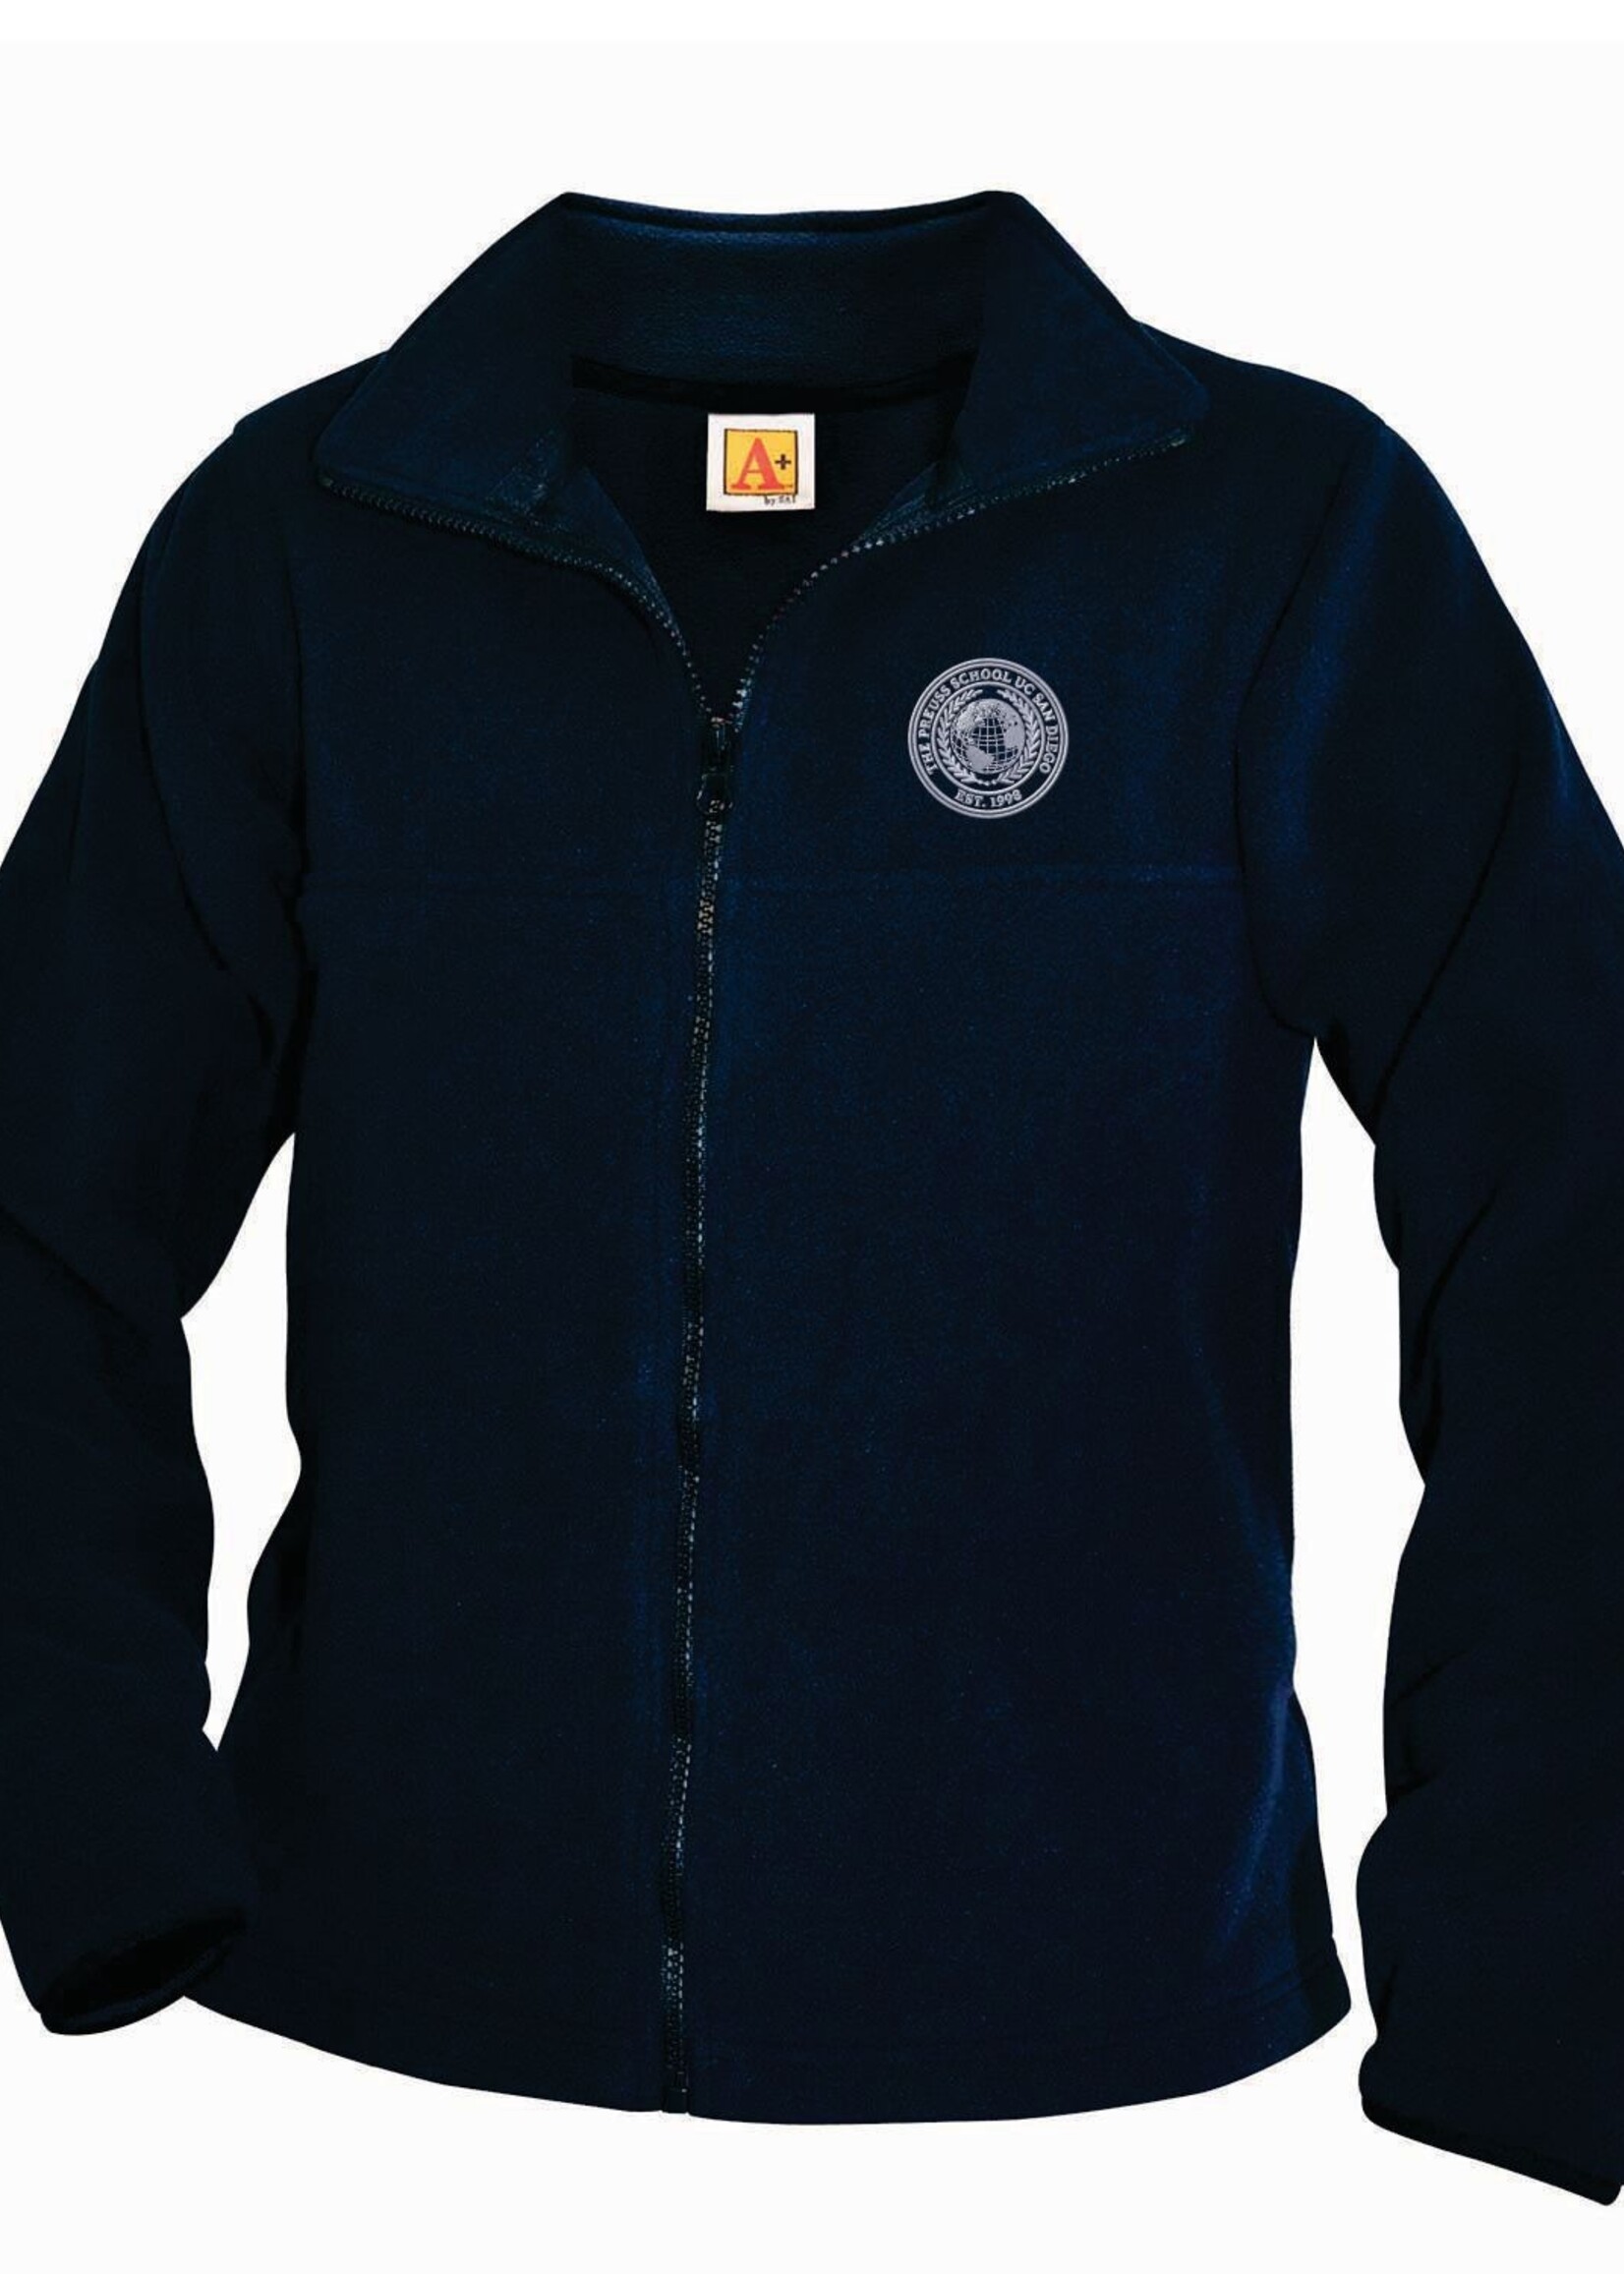 Preuss Navy Fleece Full Zip Jacket